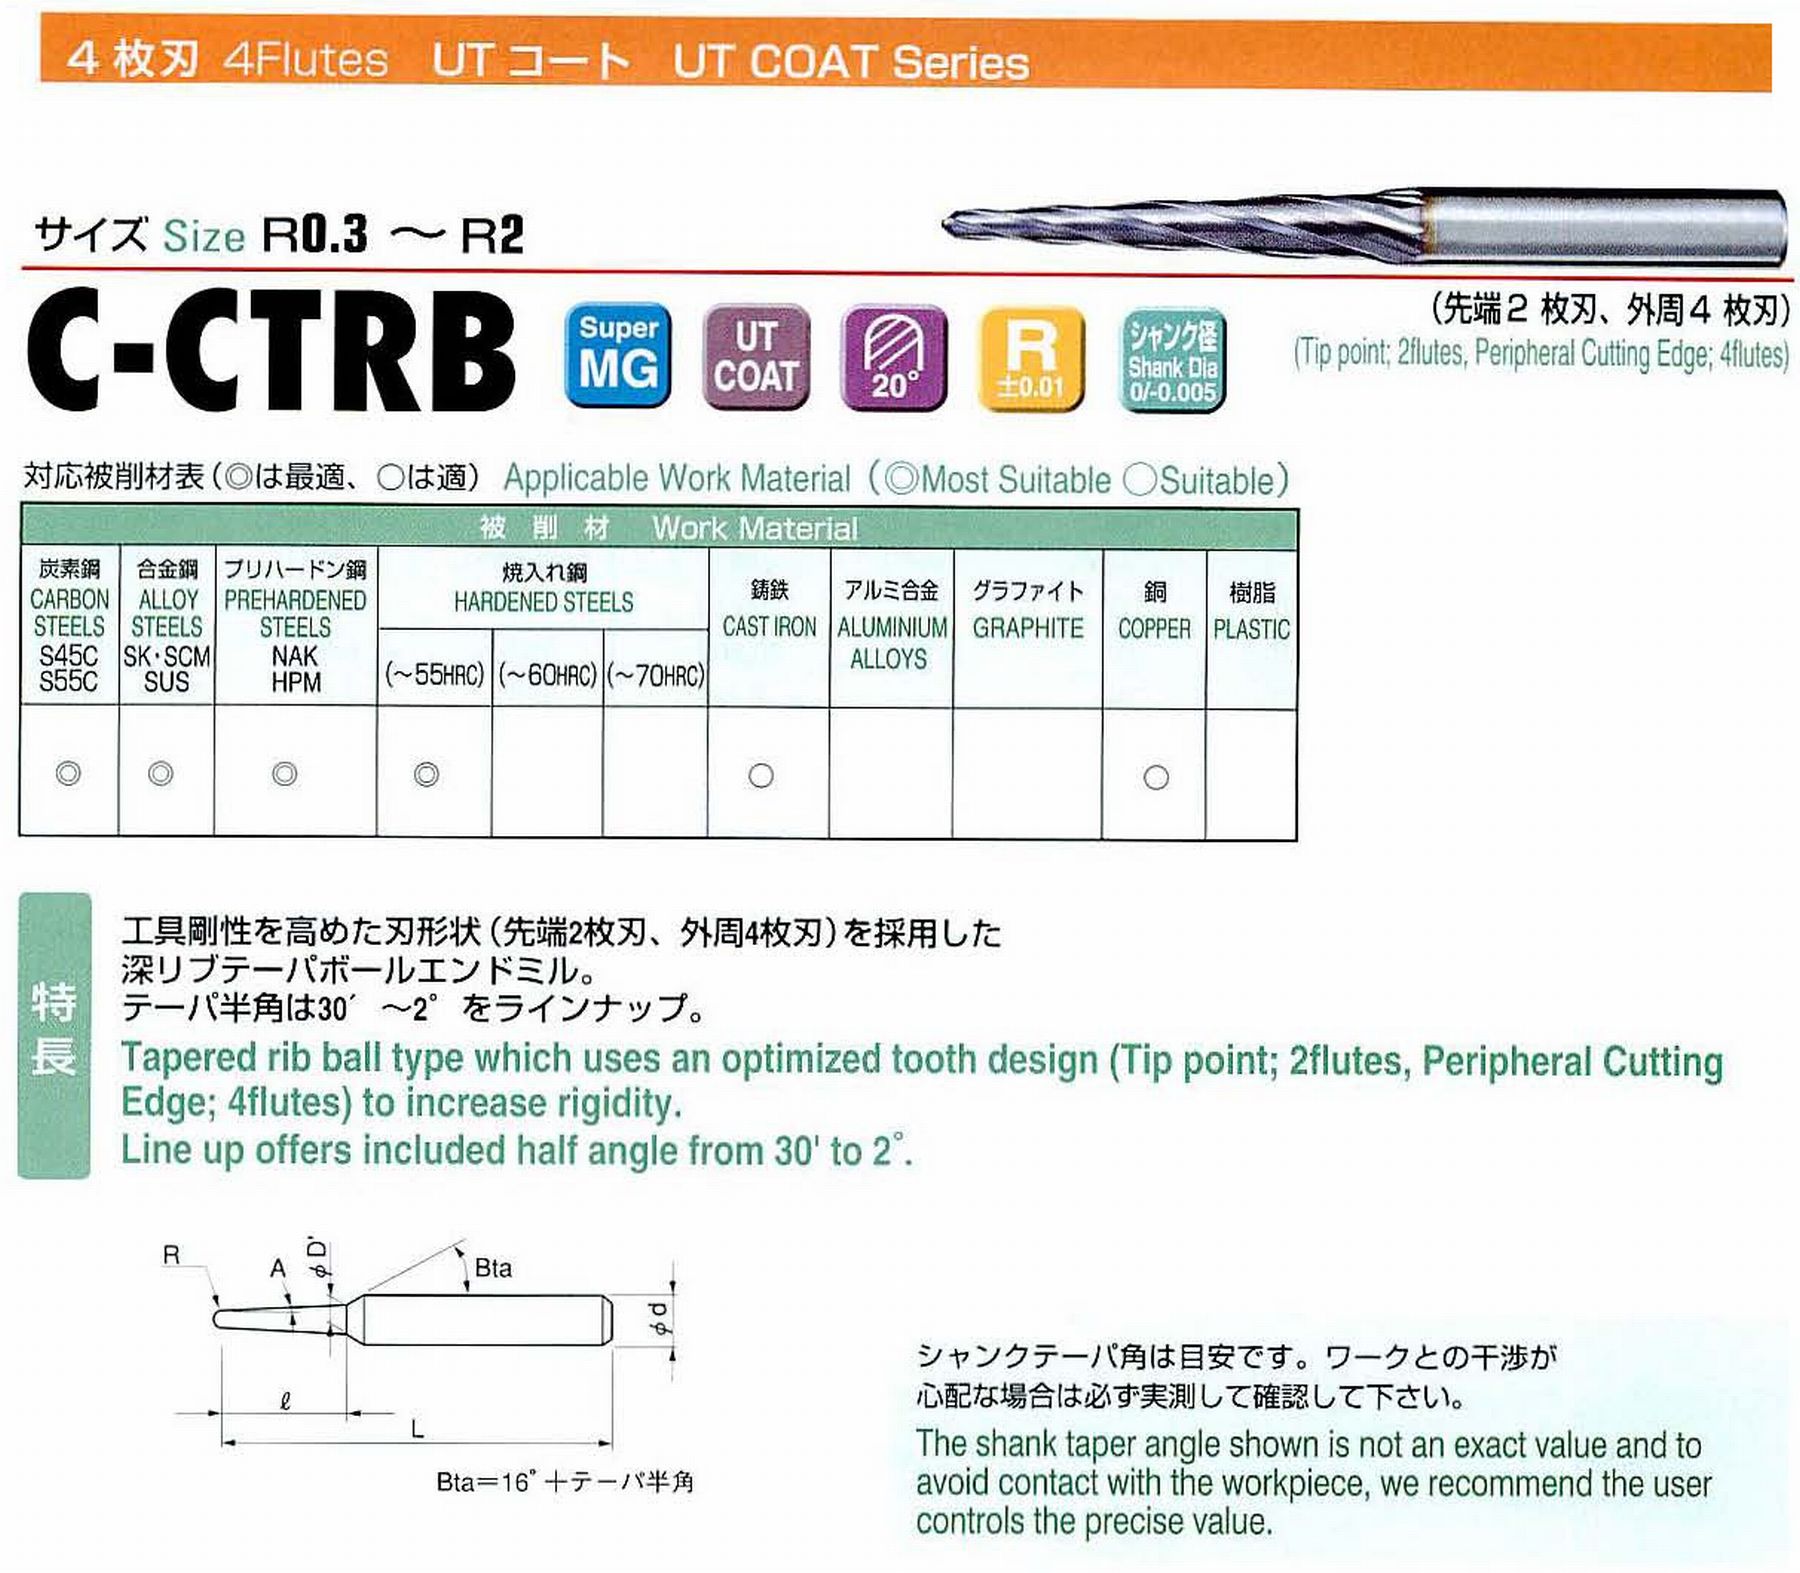 ユニオンツール 4枚刃 C-CTRB4016-10-1 ボール半径R0.8 テーパ半角30′ 刃長10 大端径1.76 全長45 シャンク径4